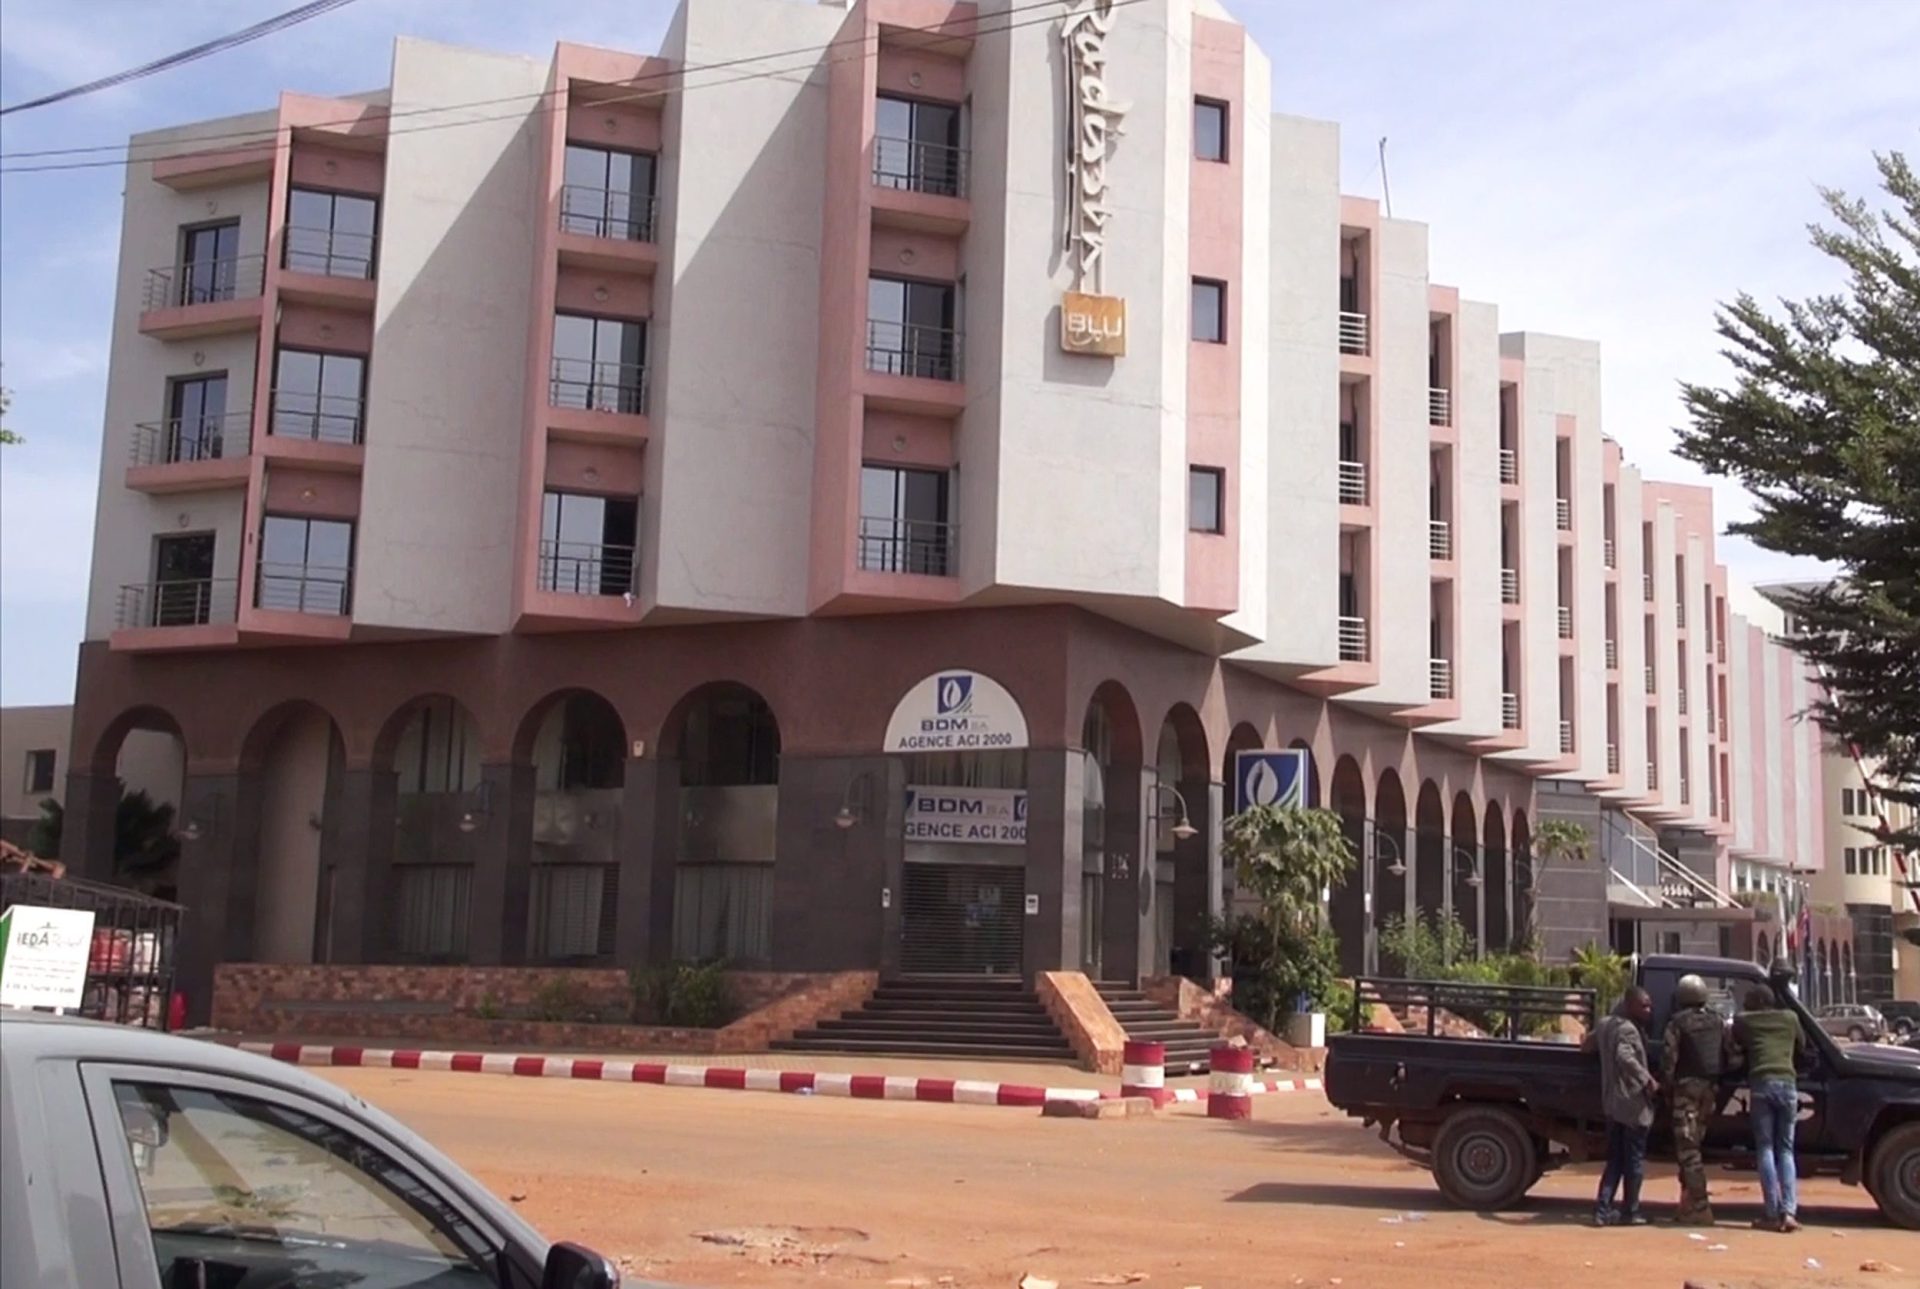 Mali. 125 clientes e 13 funcionários no edifício do hotel de Bamako